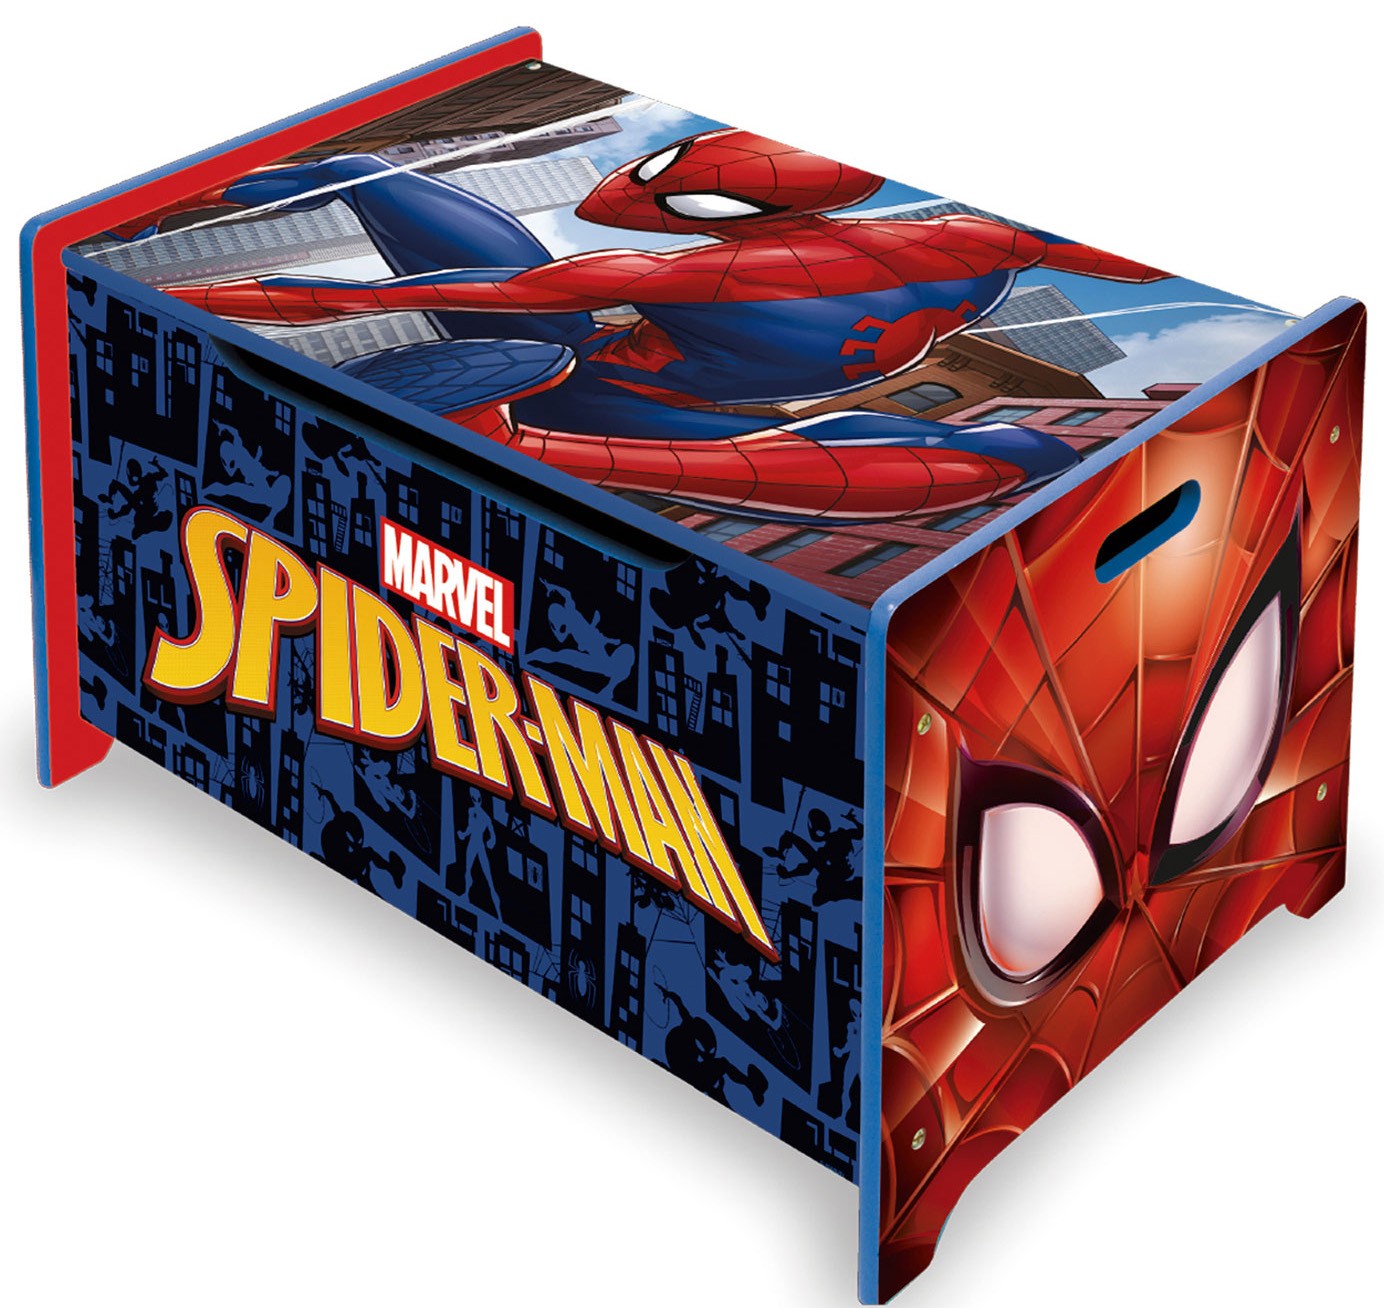 Ladita din lemn pentru depozitare jucarii Spiderman Arditex